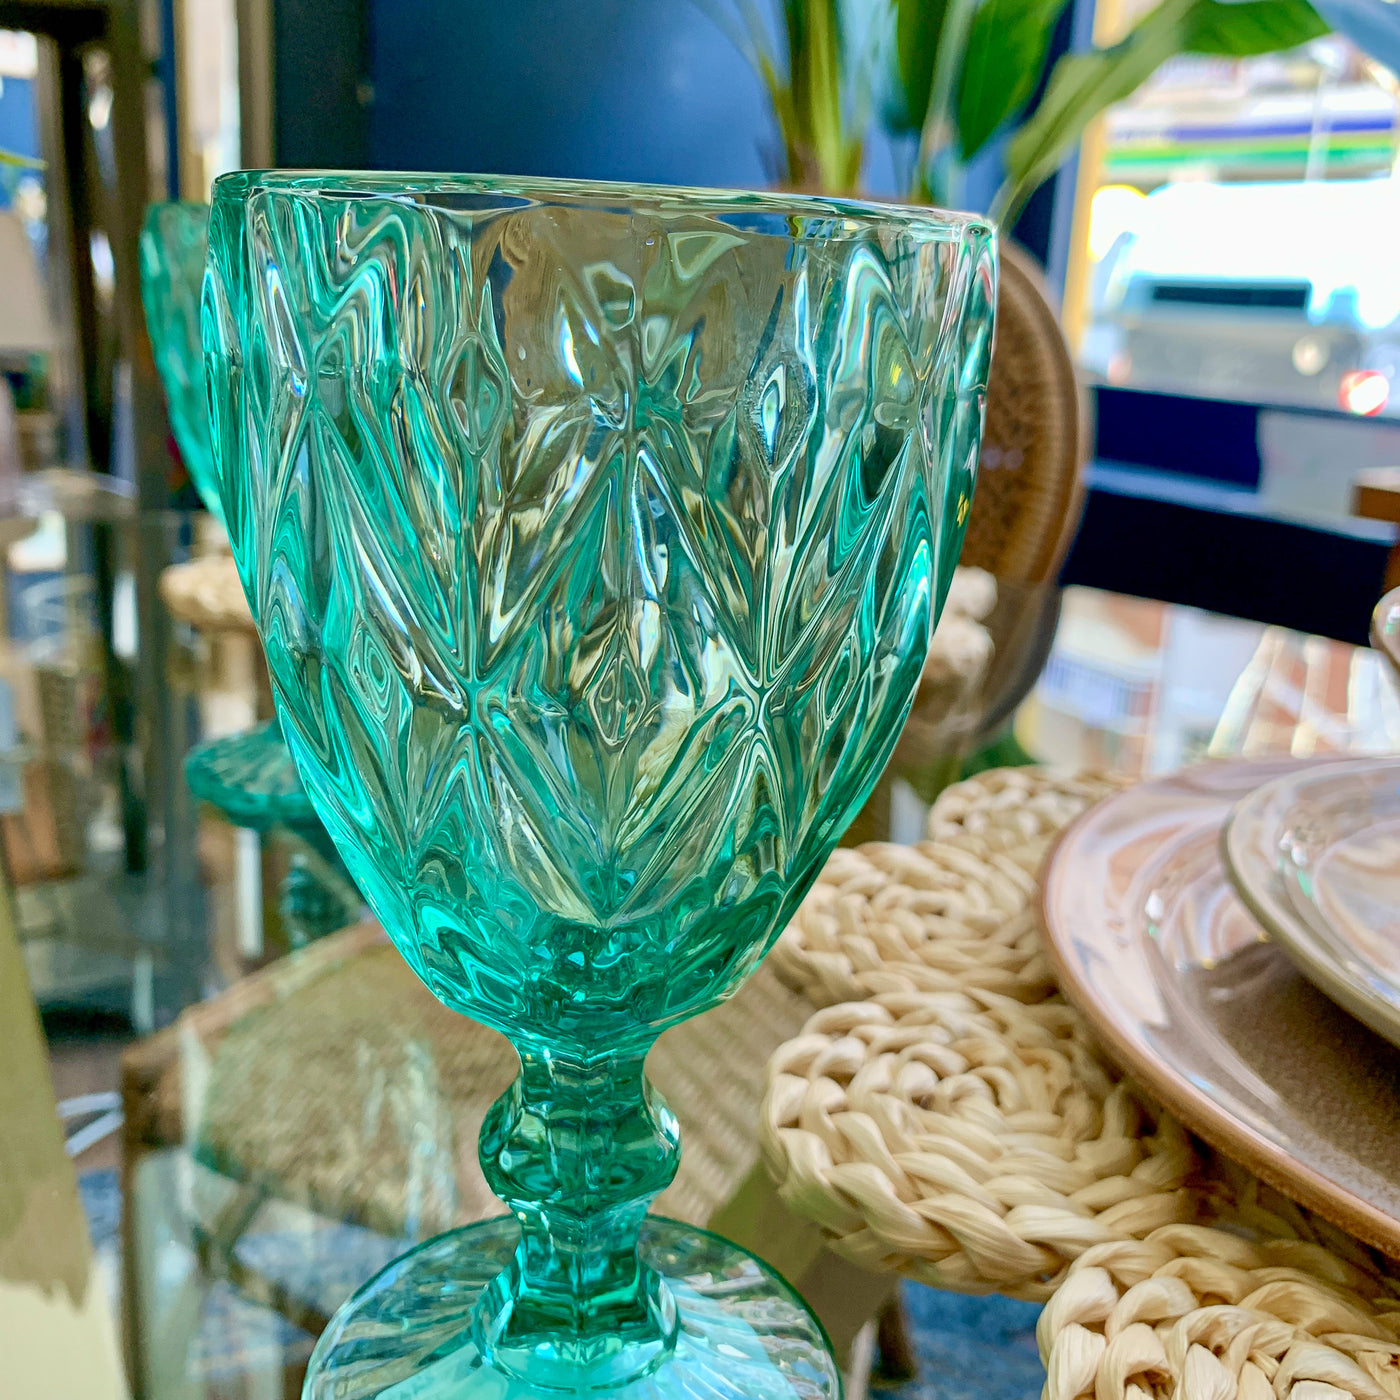 Menaje hogar Cristalería Copas de agua Vidrio y cristal Azul